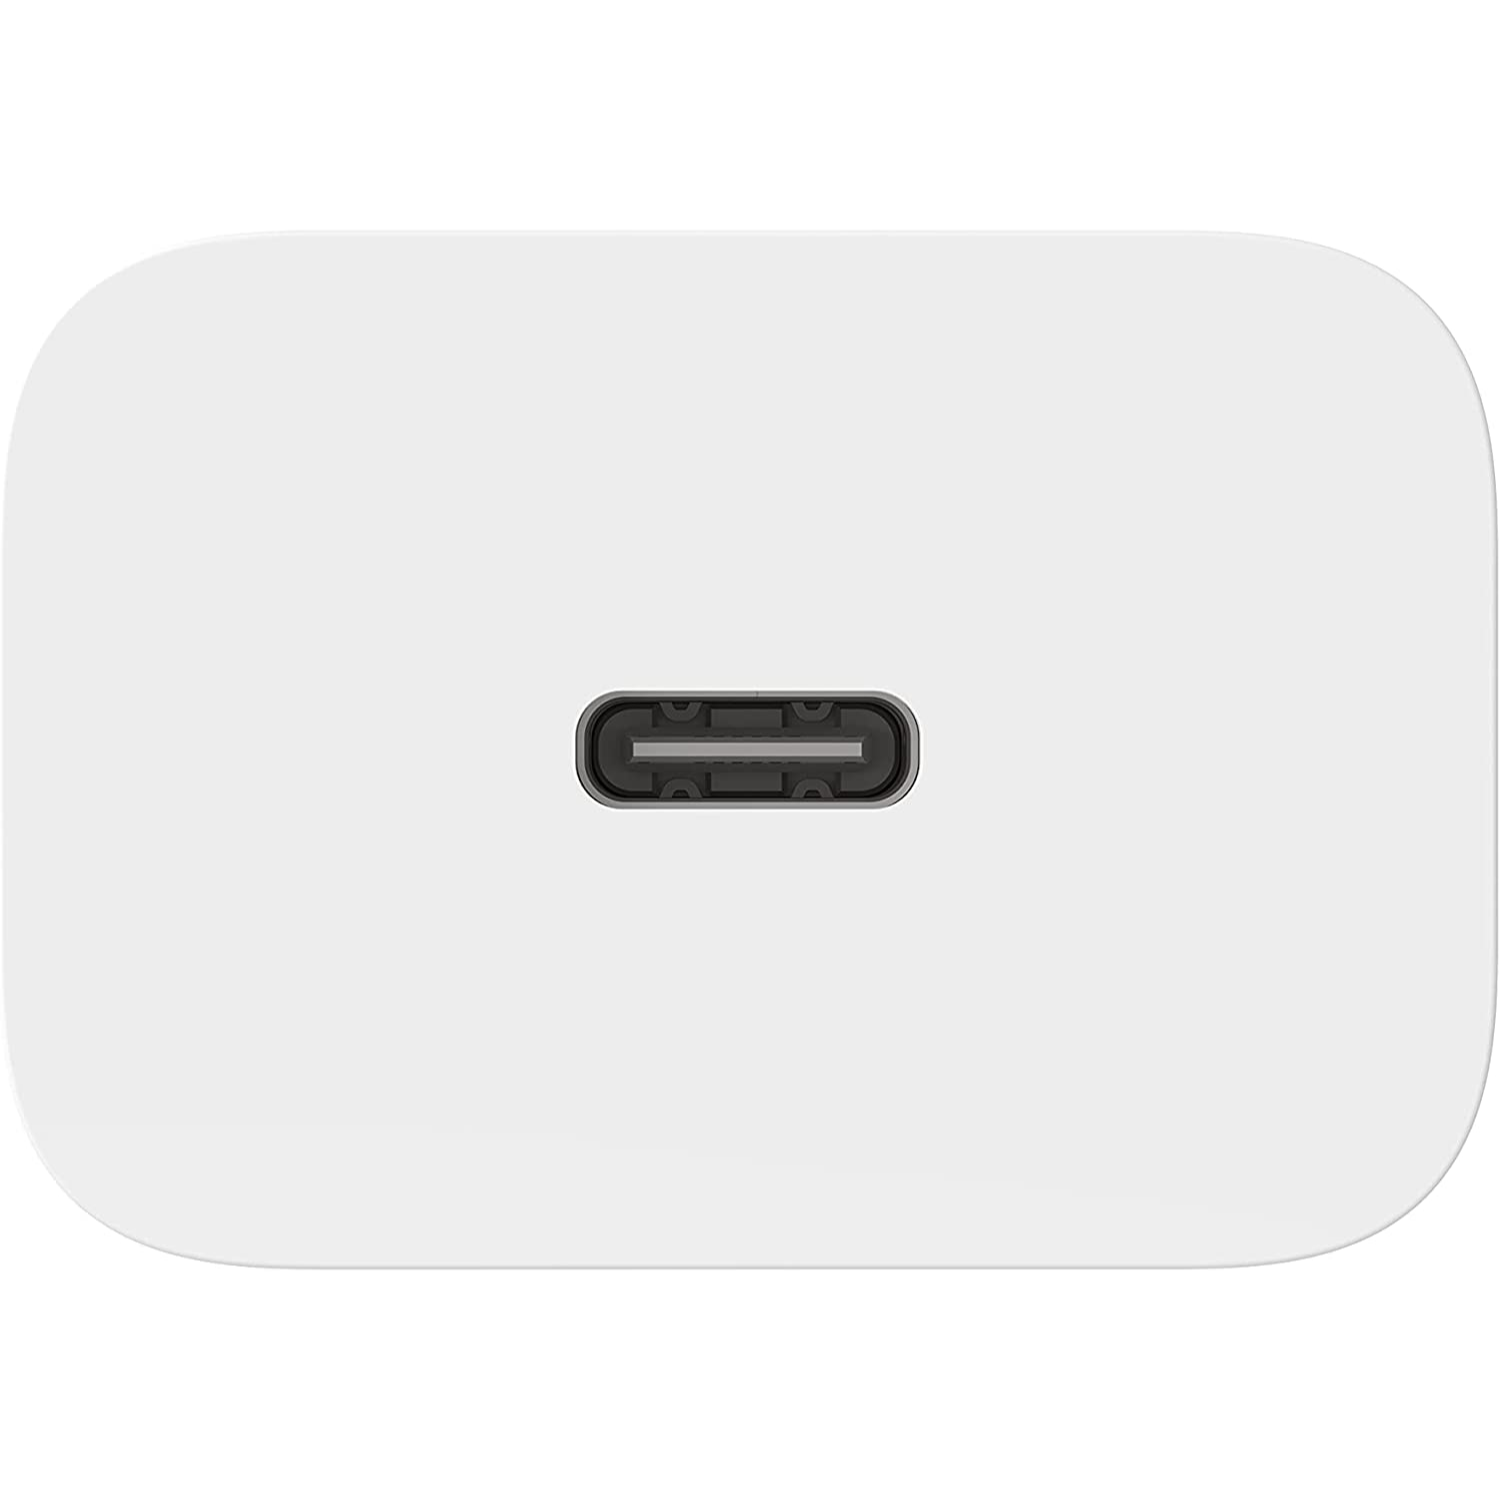 Belkin USB-C Cargador de Pared 20W PD Carga Rápida para iPhone 12 /13, Galaxy S22, Pixel 6, iPad y más